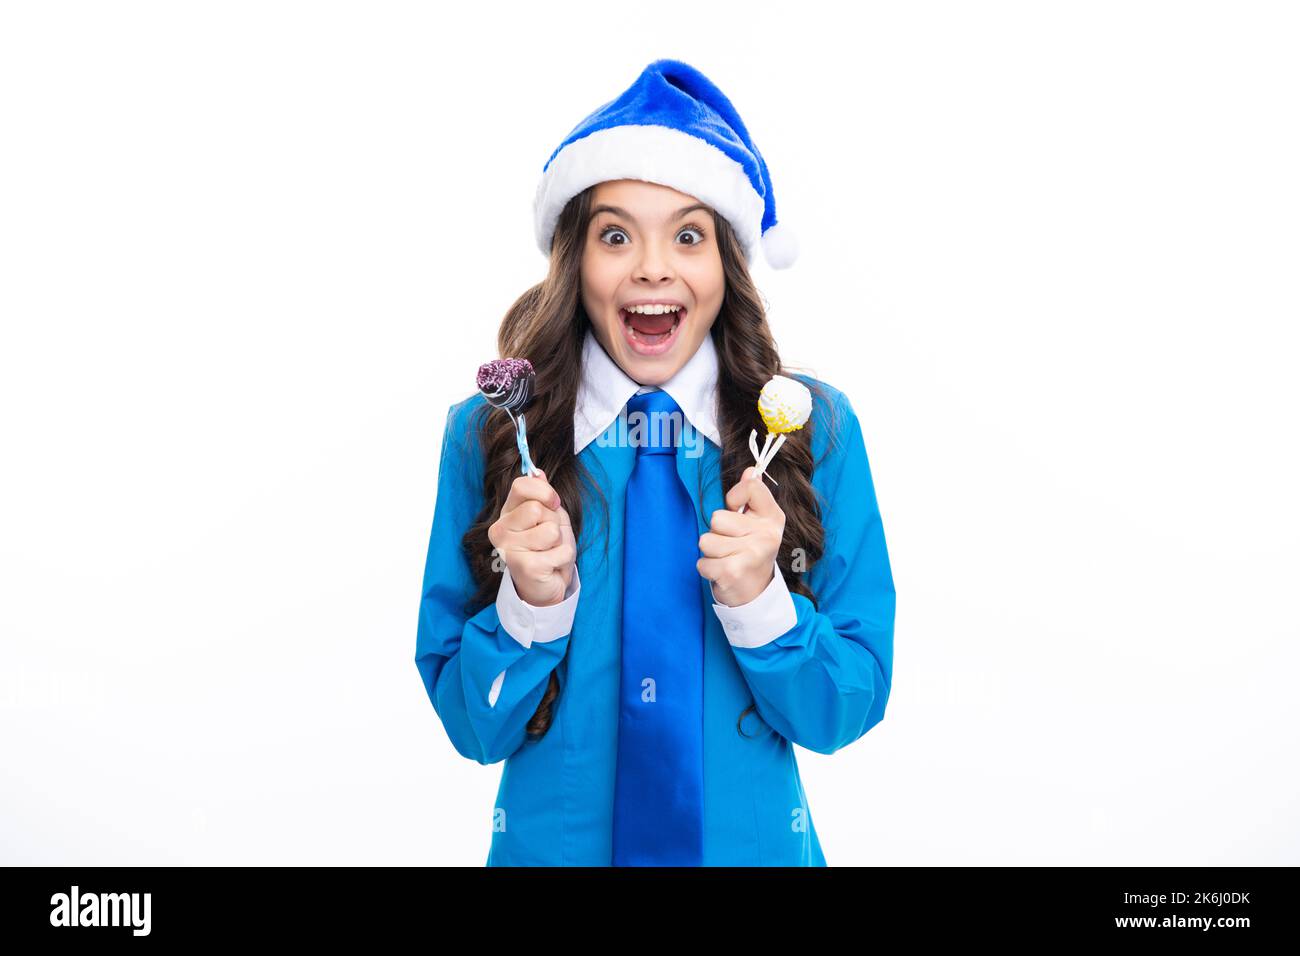 Aufgeregtes Gesicht. Lustige Kind Mädchen auf weihnachten Neujahr halten weihnachtsbonbons Lollipop in weiß isoliert. Teenager im weihnachtshut. Erstaunlicher Ausdruck, jubeln Stockfoto